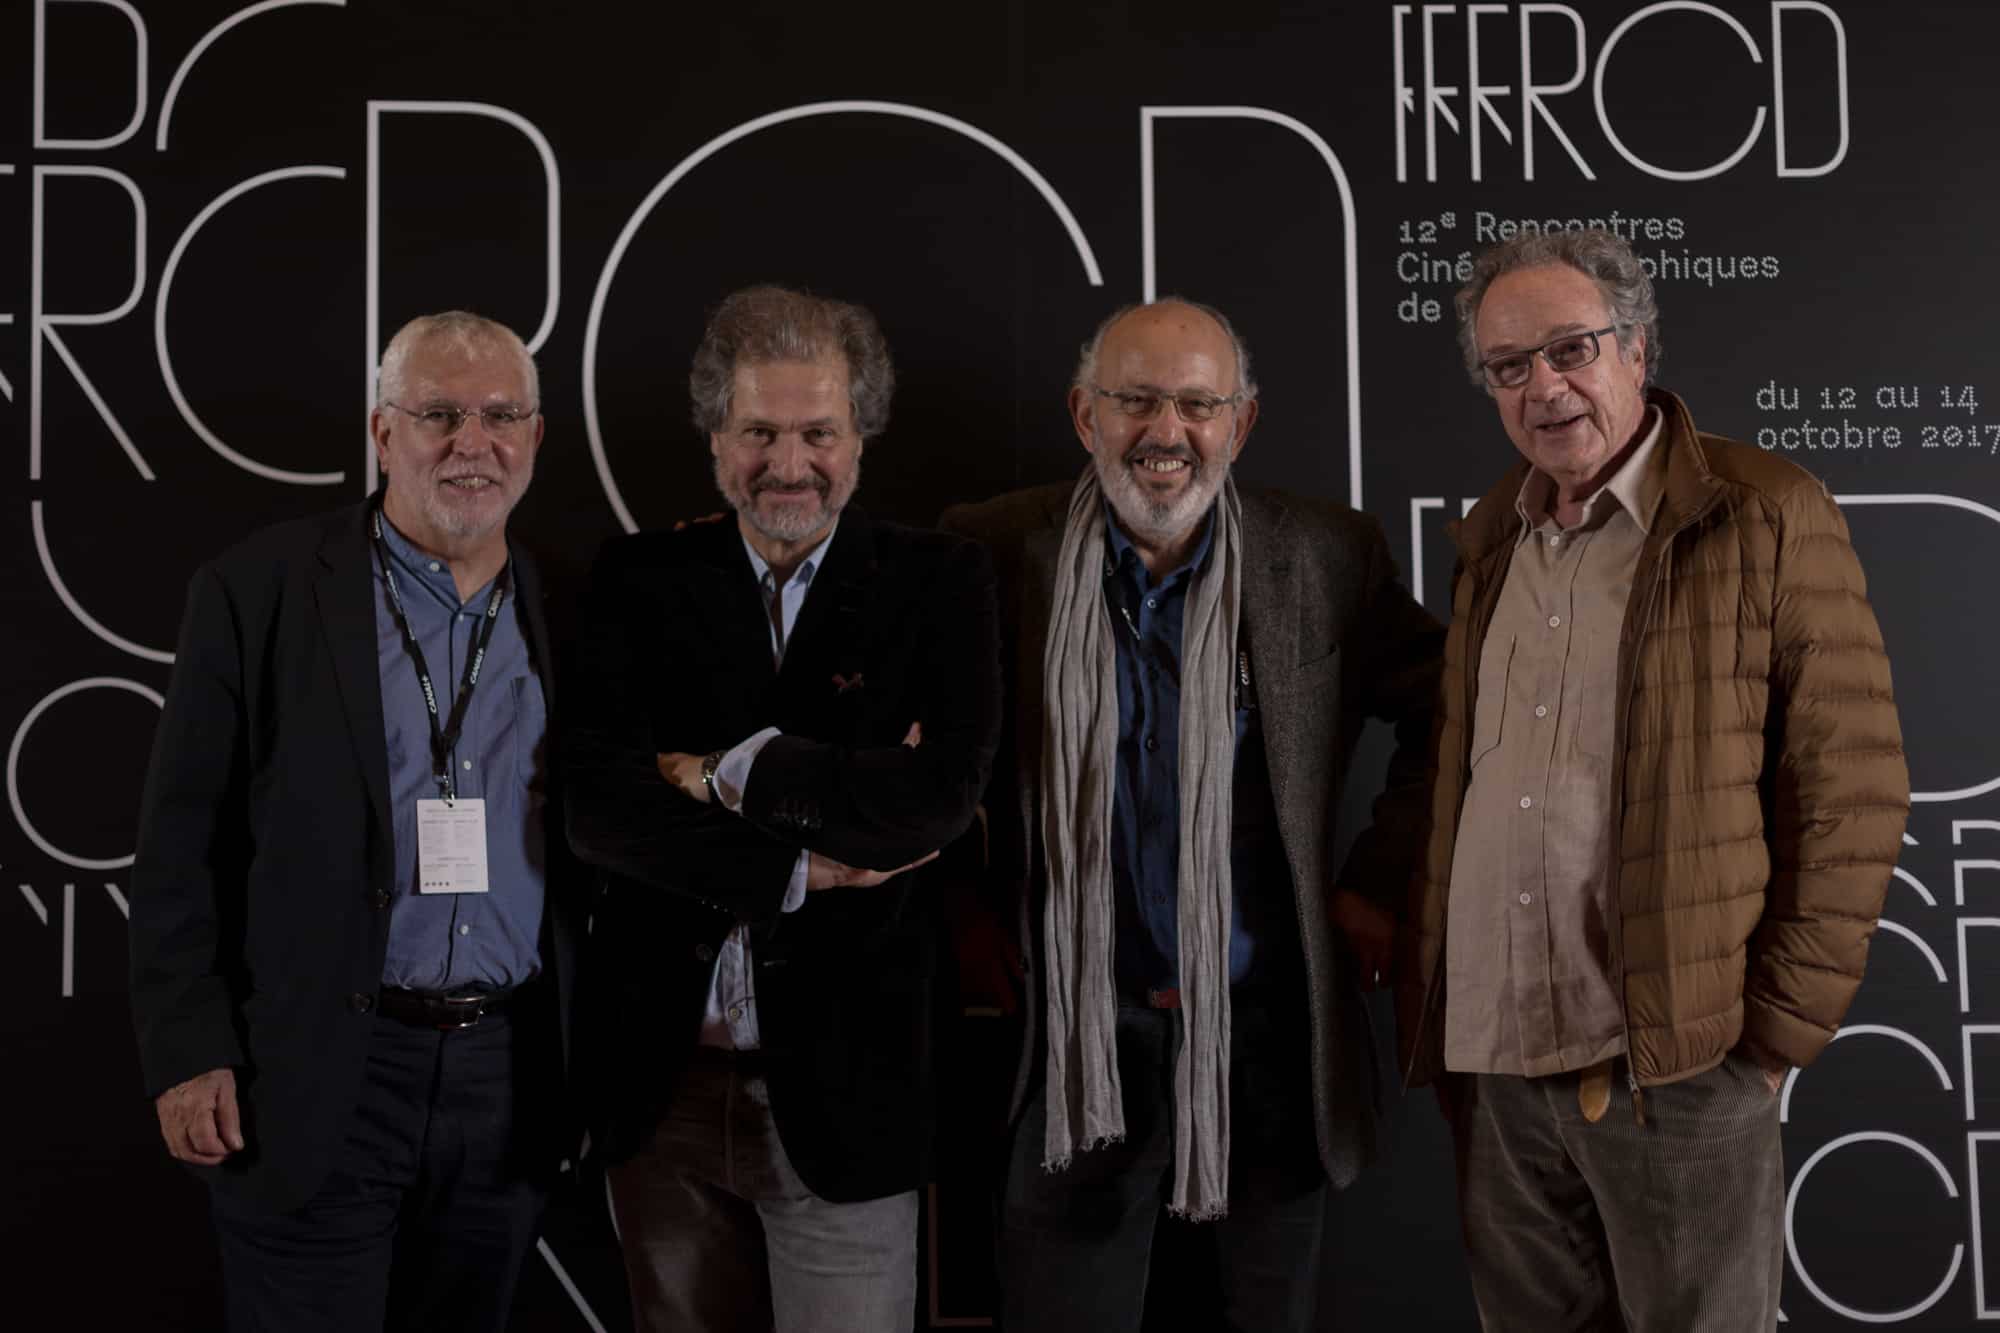 EICAR International Department's Director Bob Swain, with Jean Achache at the Rencontres Cinématographiques de Dijon - ©Matthieu BEGEL